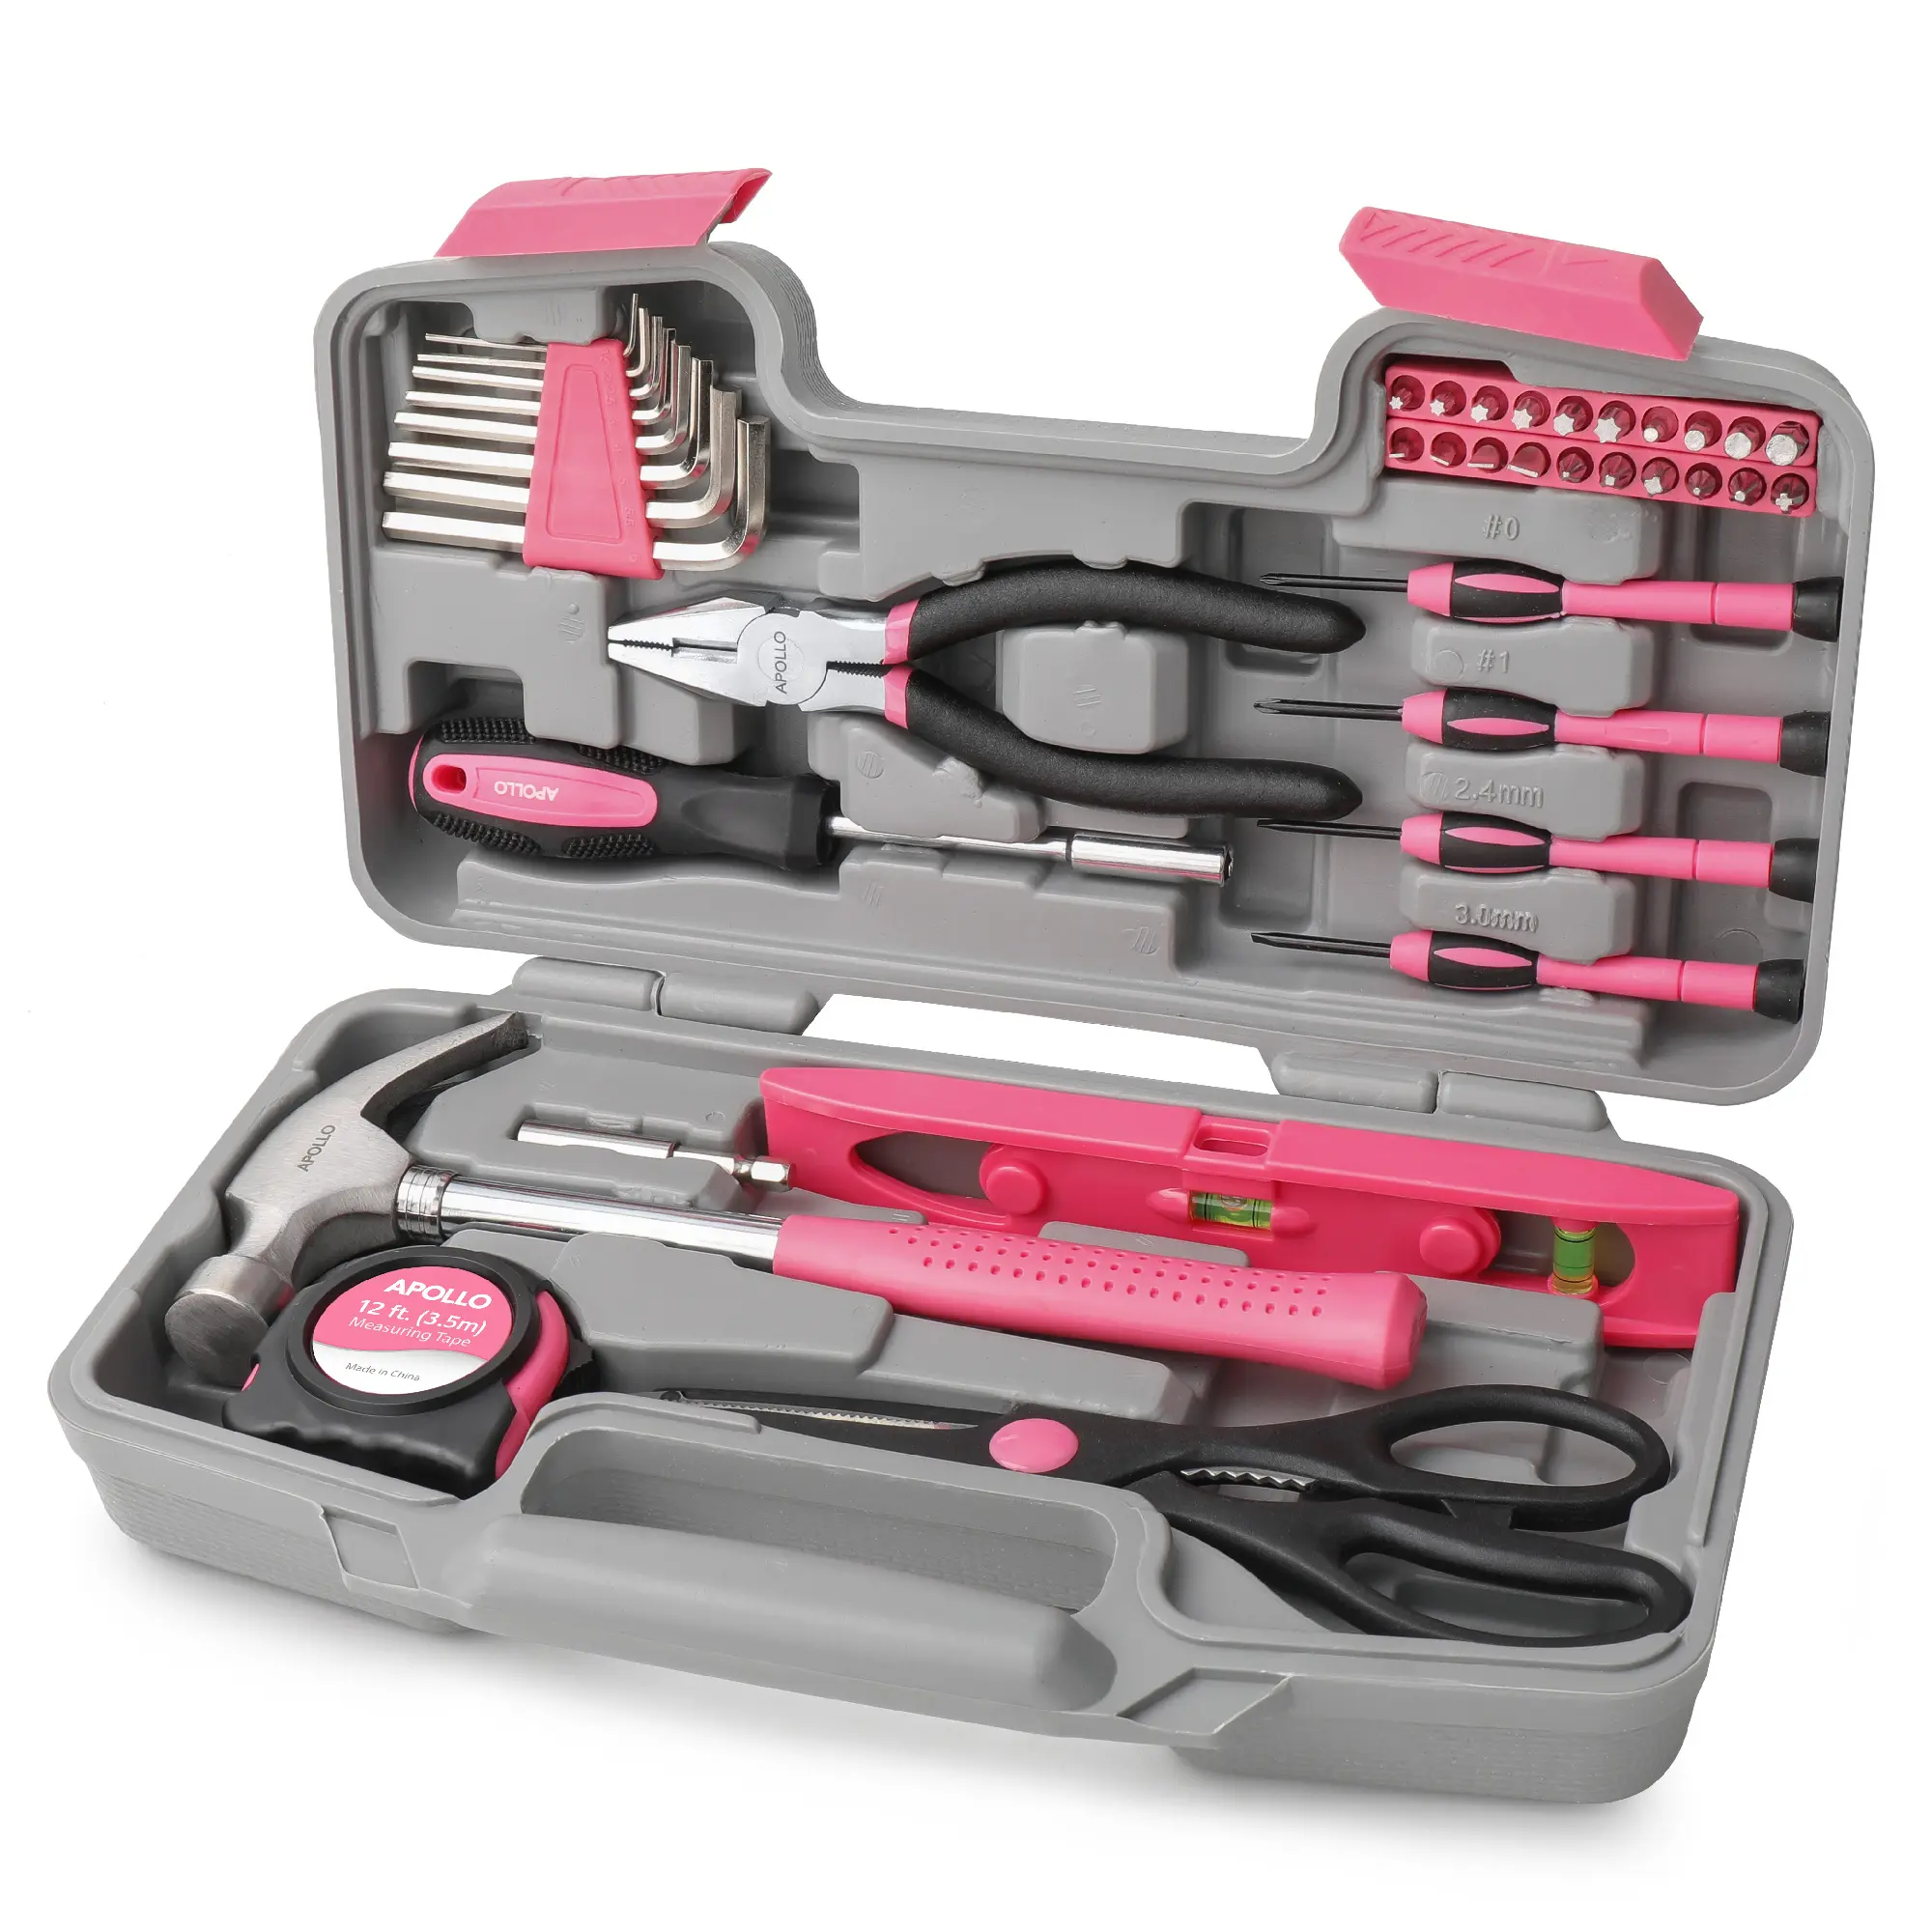 Kit de ferramentas DIY para casa e escritório rosa 39 unidades, conjunto completo de ferramentas manuais domésticas essenciais em uma caixa de ferramentas portátil compacta. OEM ODM pronto